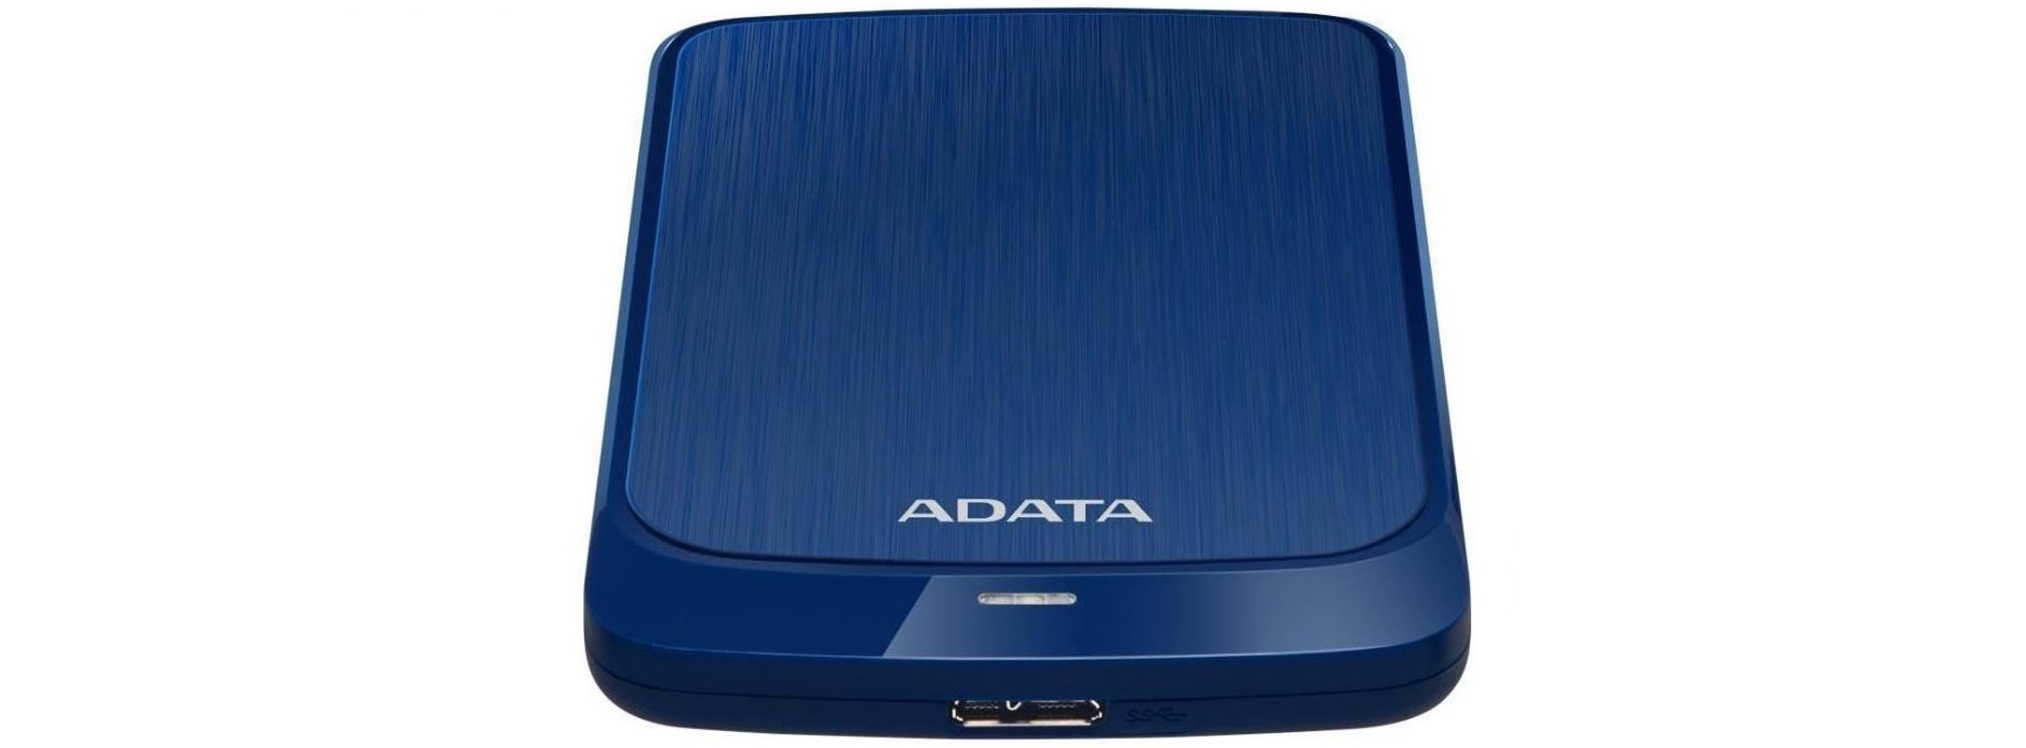 Přenosný pevný disk ADATA HV320 1TB modrý blue